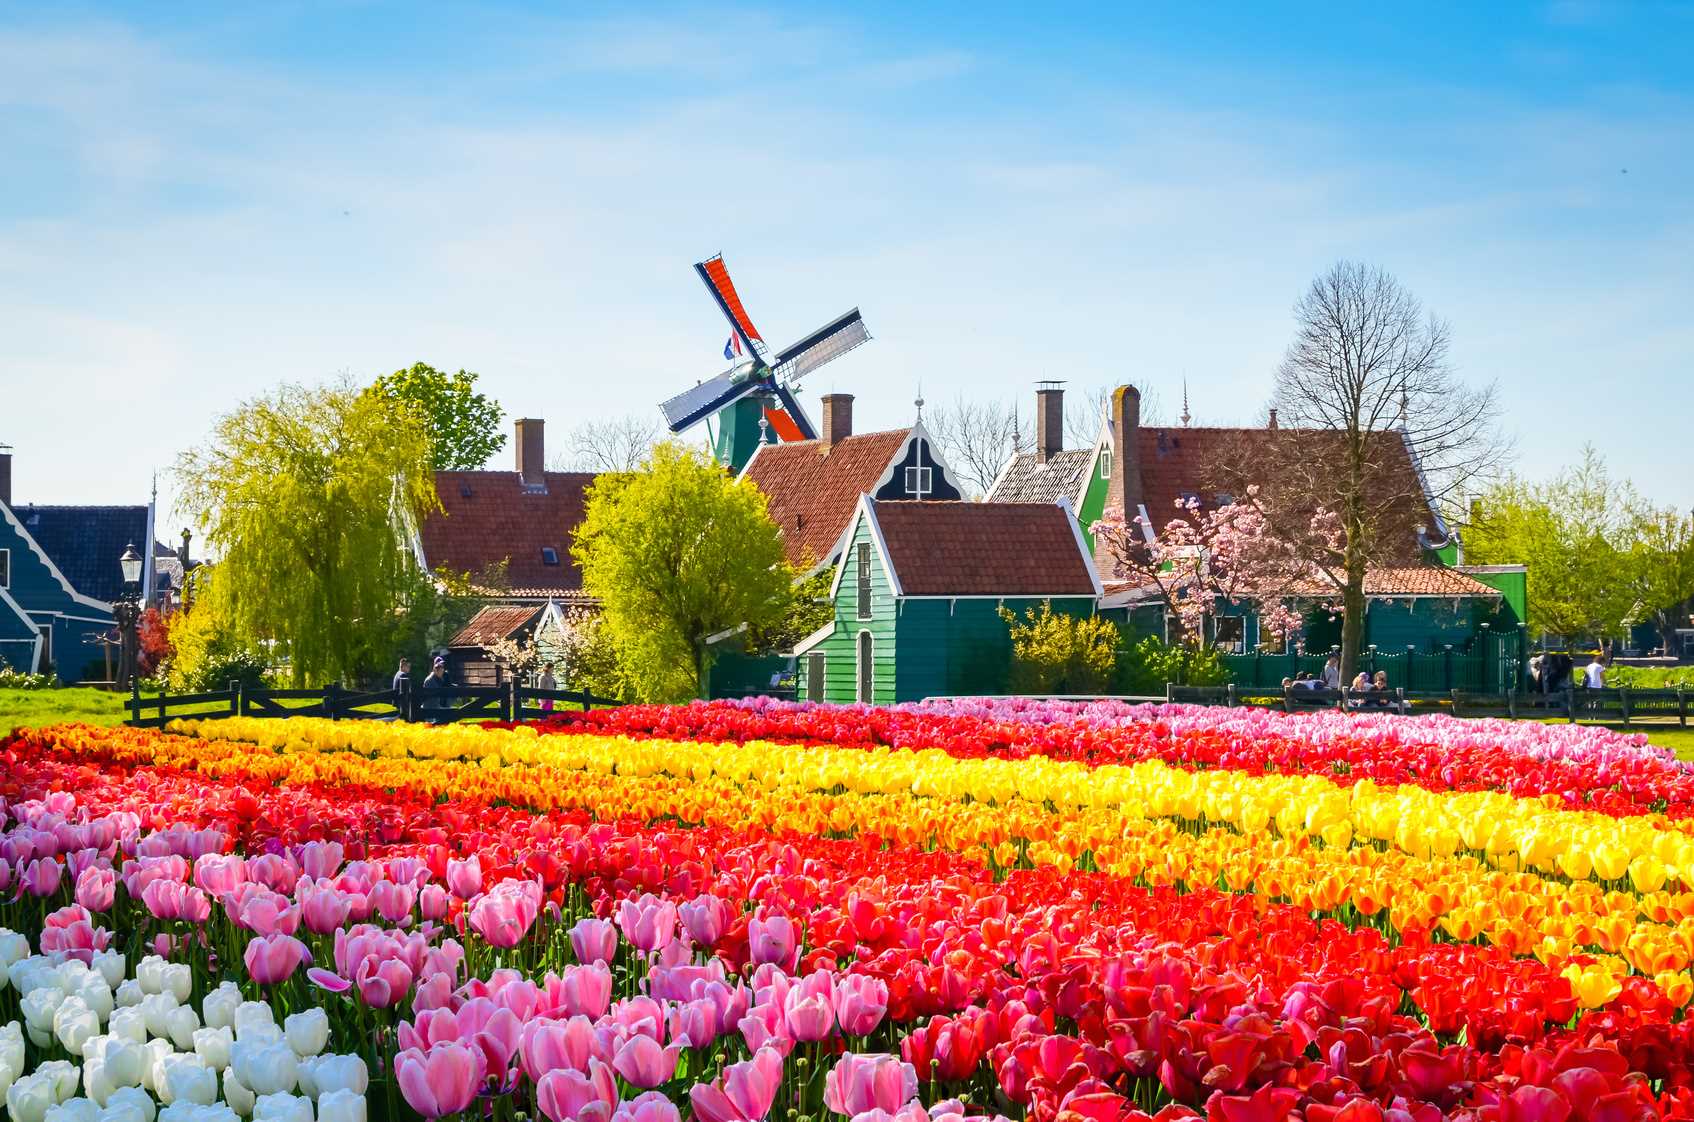 Lễ hội hoa lớn nhất Hà Lan - Keukenhof diễn ra vào 24/3 - 15/5/2022